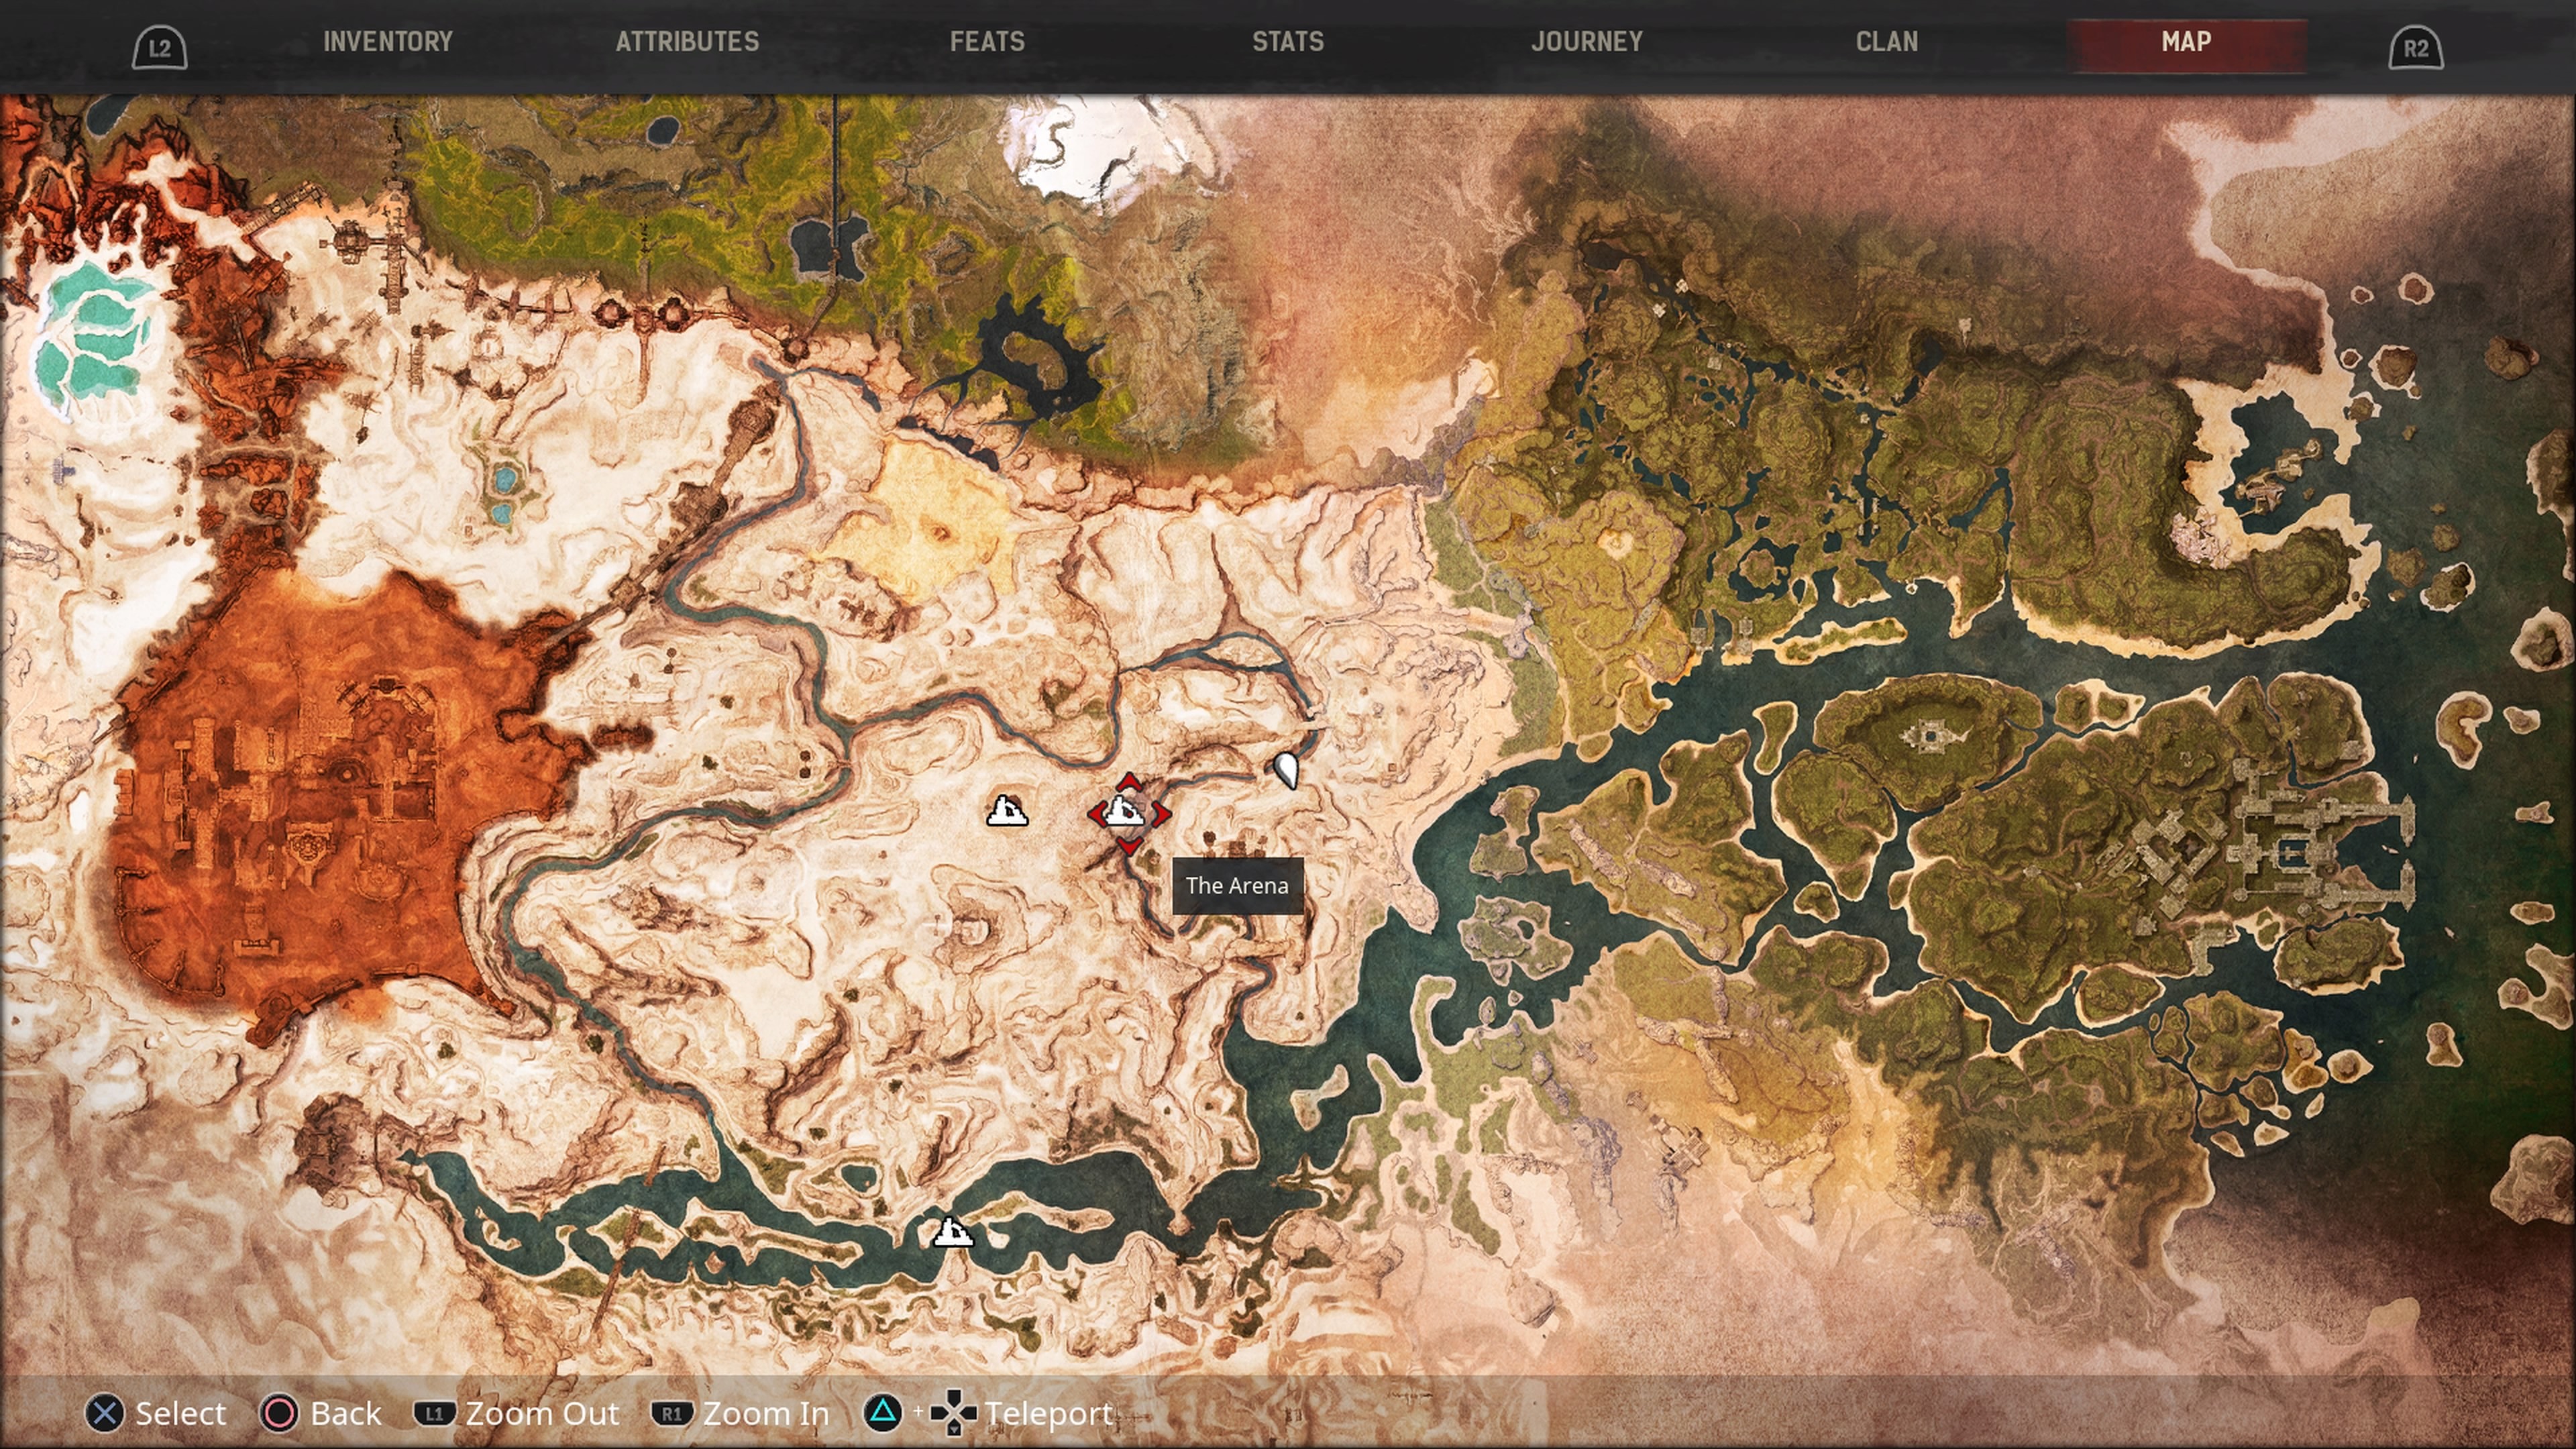 conan exiles interactive map for